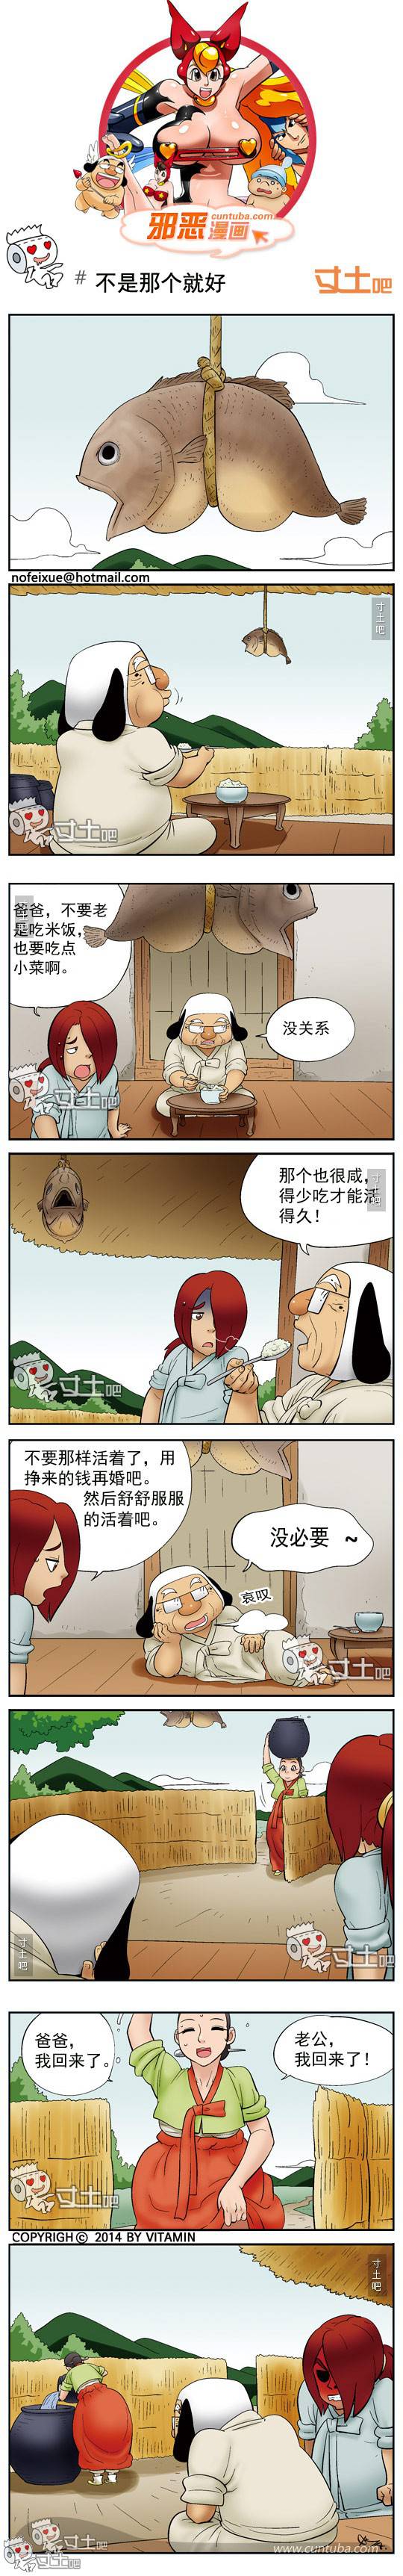 邪恶漫画爆笑囧图第259刊：穿反的裤子